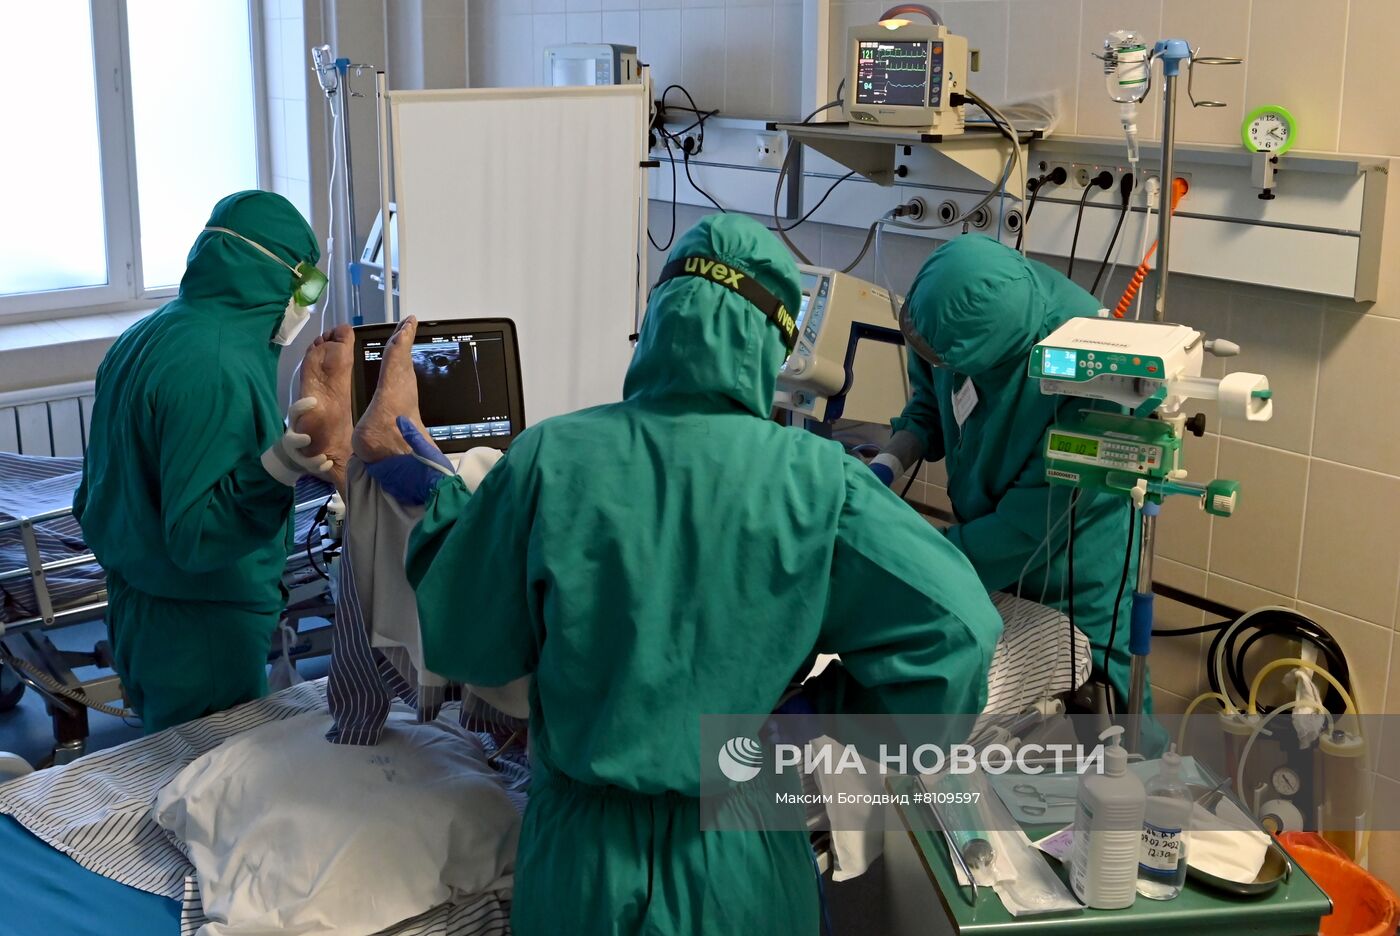 Лечение пациентов с Covid-19 в Республиканской больнице Казани